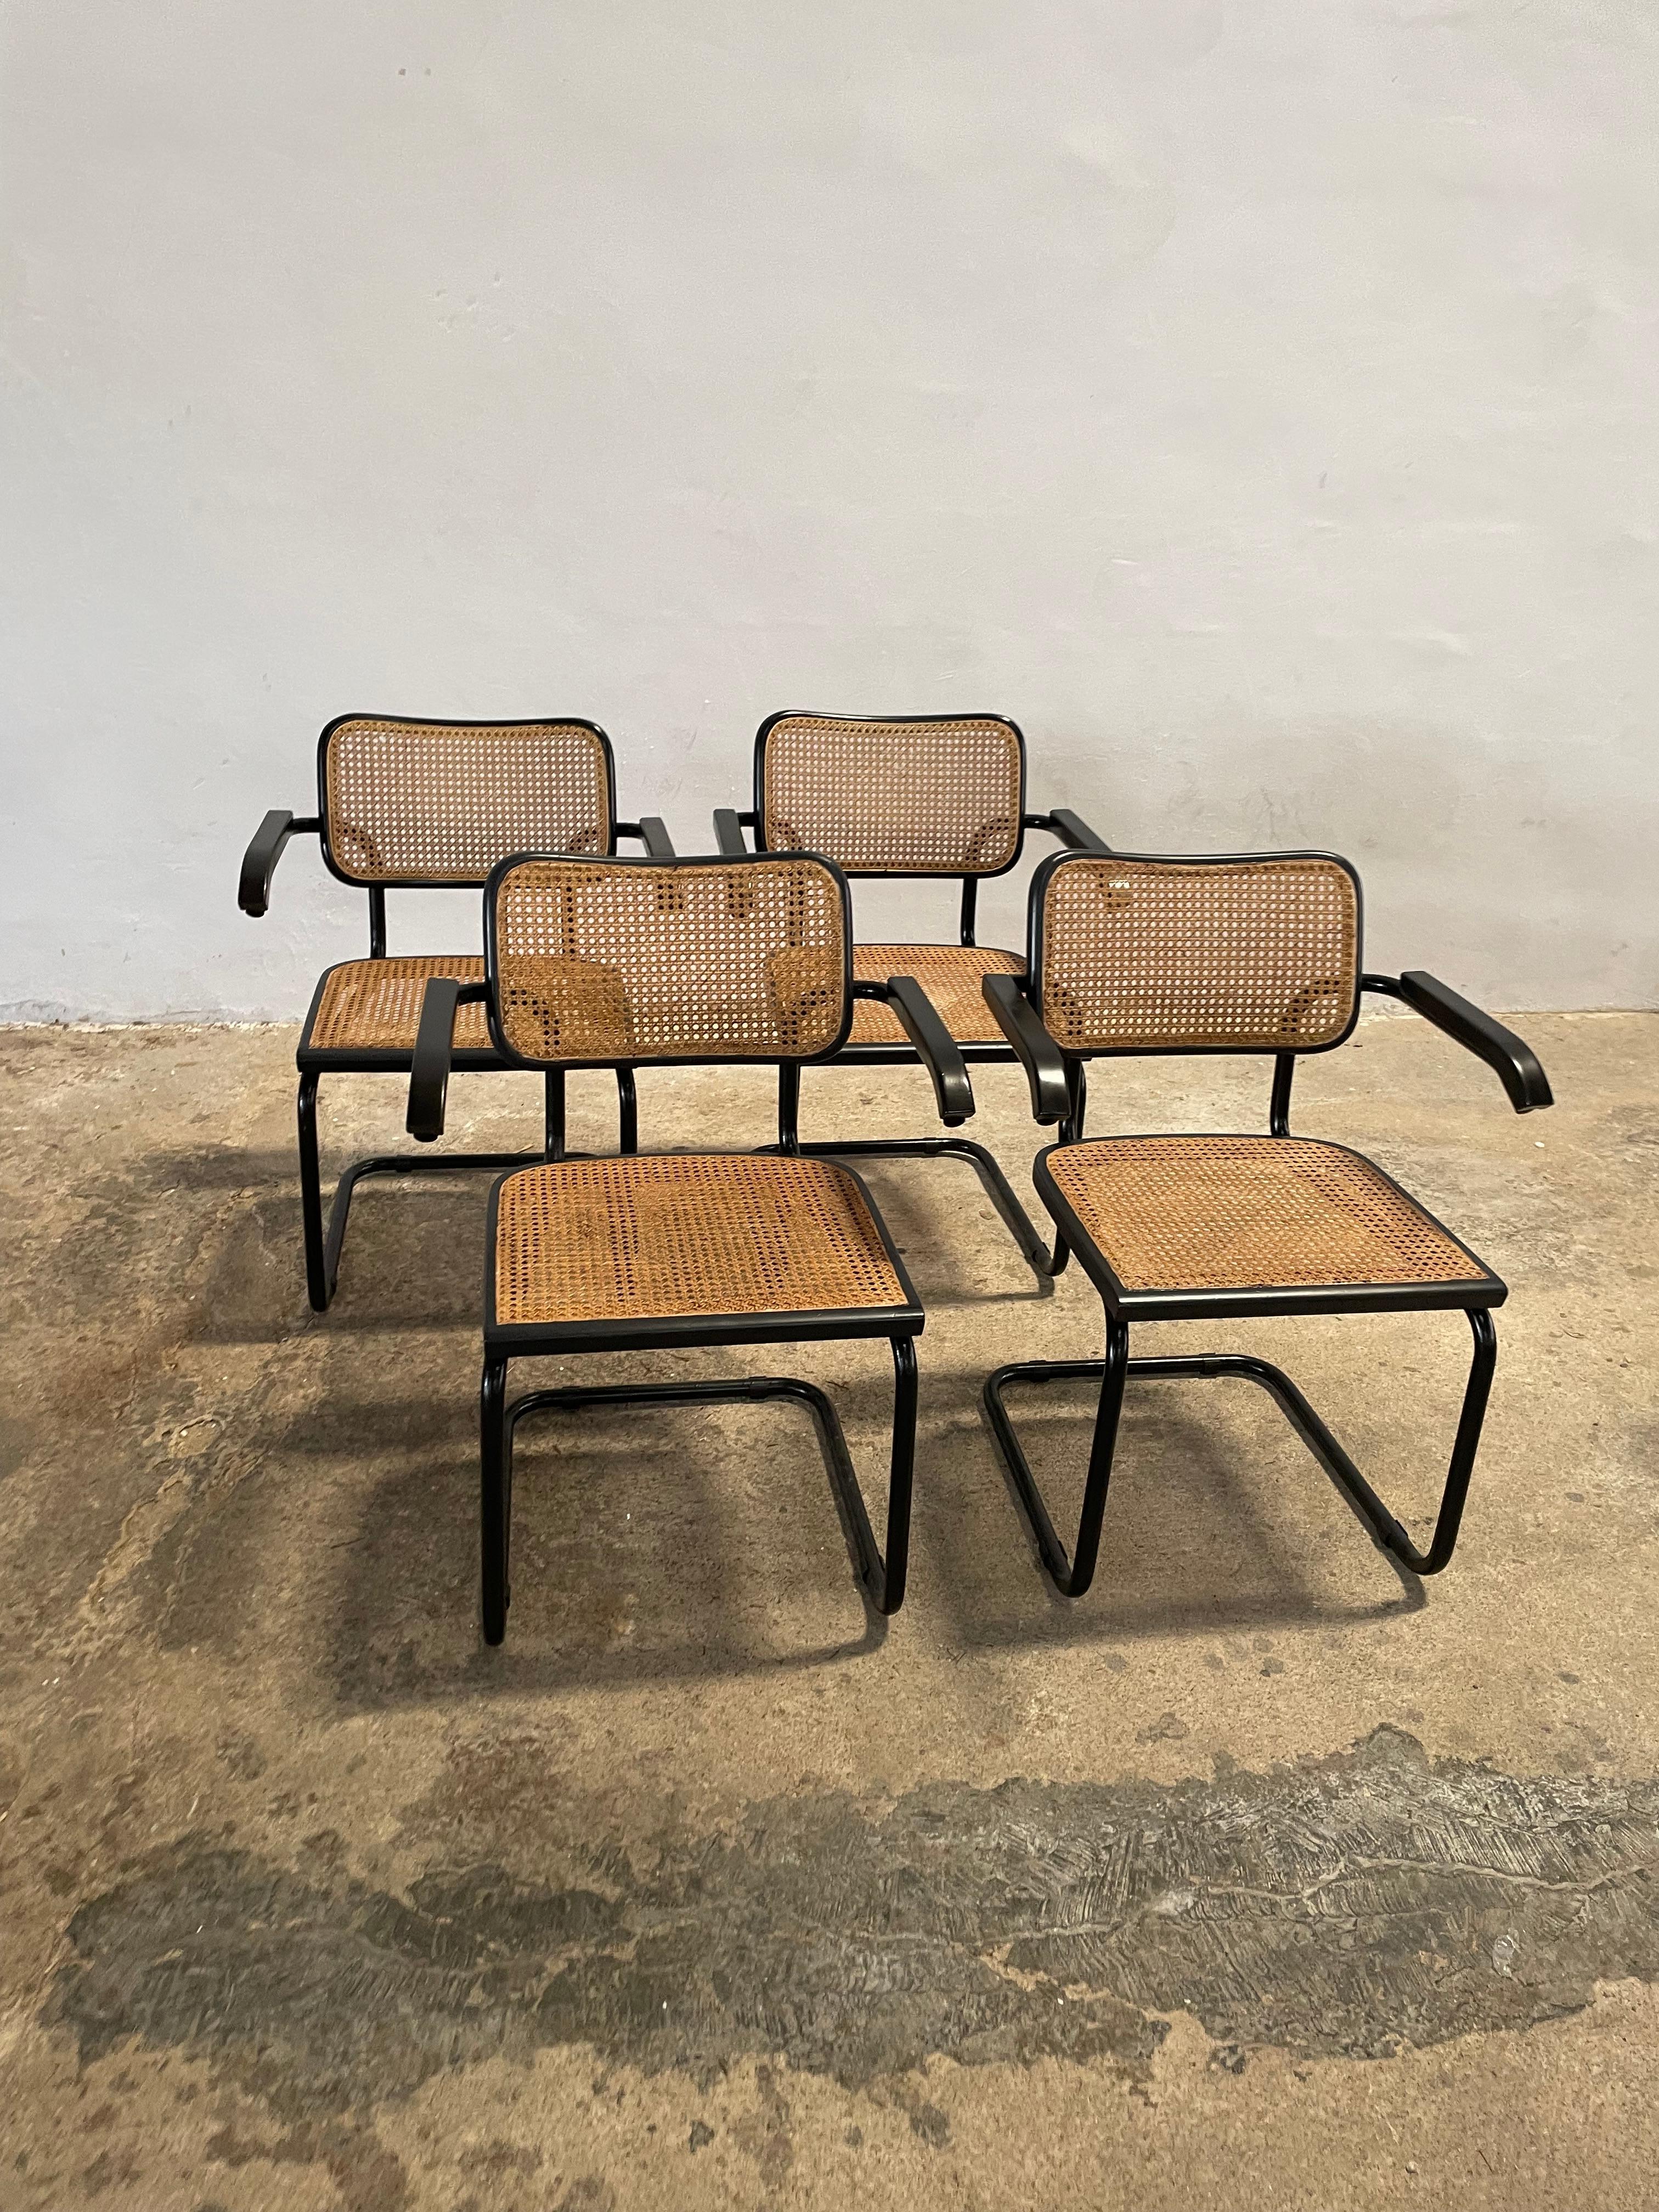 Ensemble de quatre (4) rares chaises Icone entièrement noires, icône du Bauhaus et conçues en 1928, par Marcel Breuer. Bois de hêtre noir, structure tubulaire laquée noire. En bon état vintage, usure due à l'âge et à l'utilisation.

Offert ici un